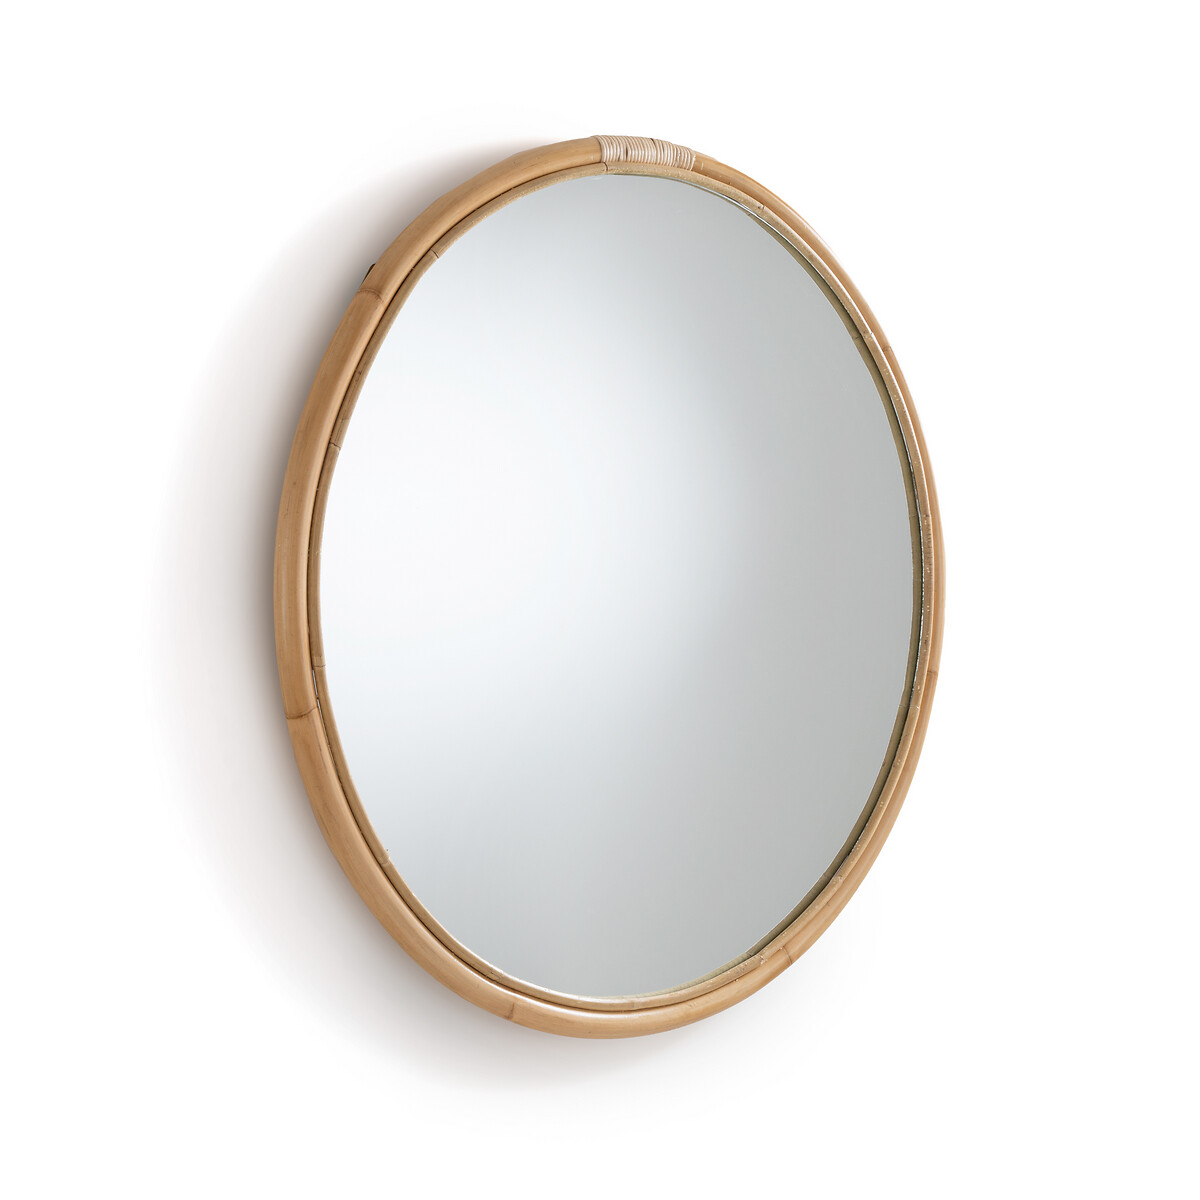 Зеркало круглое из ротанга 90 см Nogu единый размер бежевый зеркало из ротанга в форме сердца в60 см nogu единый размер бежевый